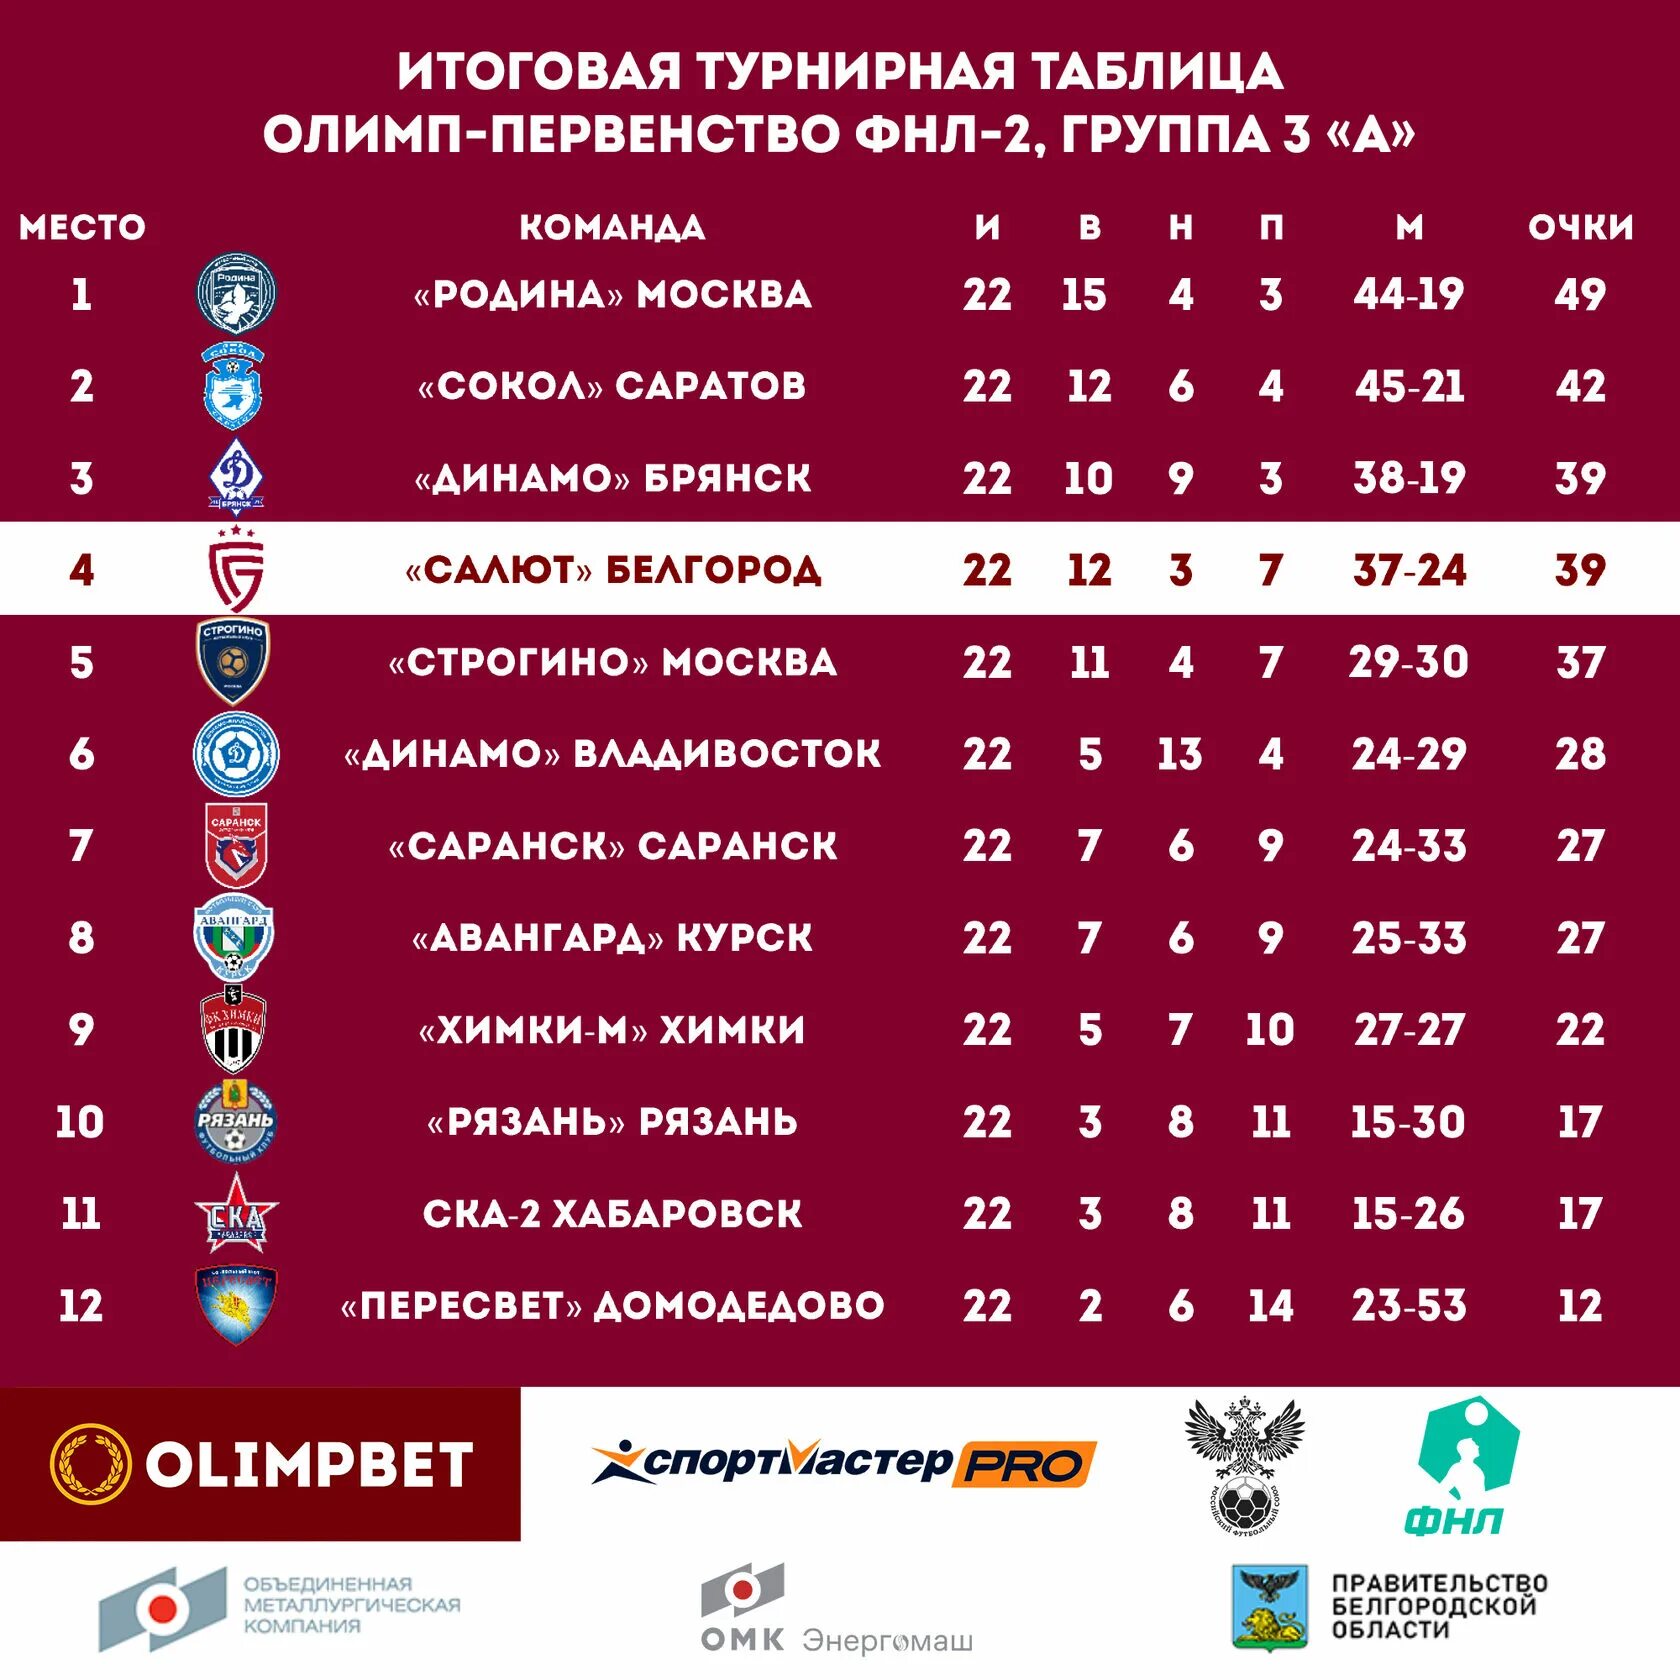 Олимп ФНЛ 2021 2022. Салют Белгород турнирная таблица. Результаты последнего тура РПЛ за последние 5 лет.